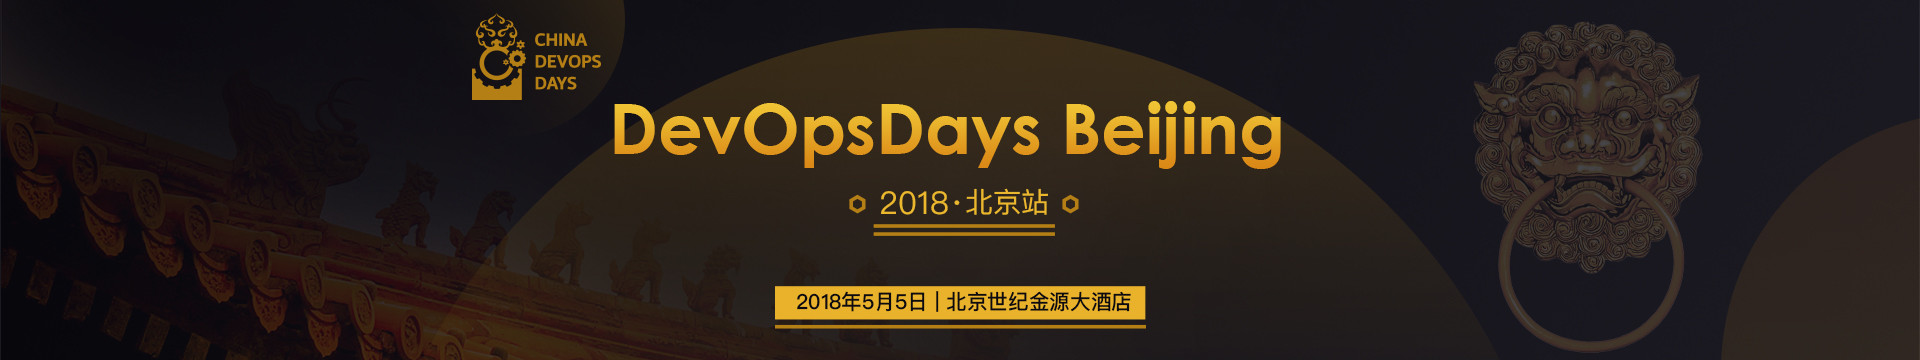 DevOpsDays Beijing 2018